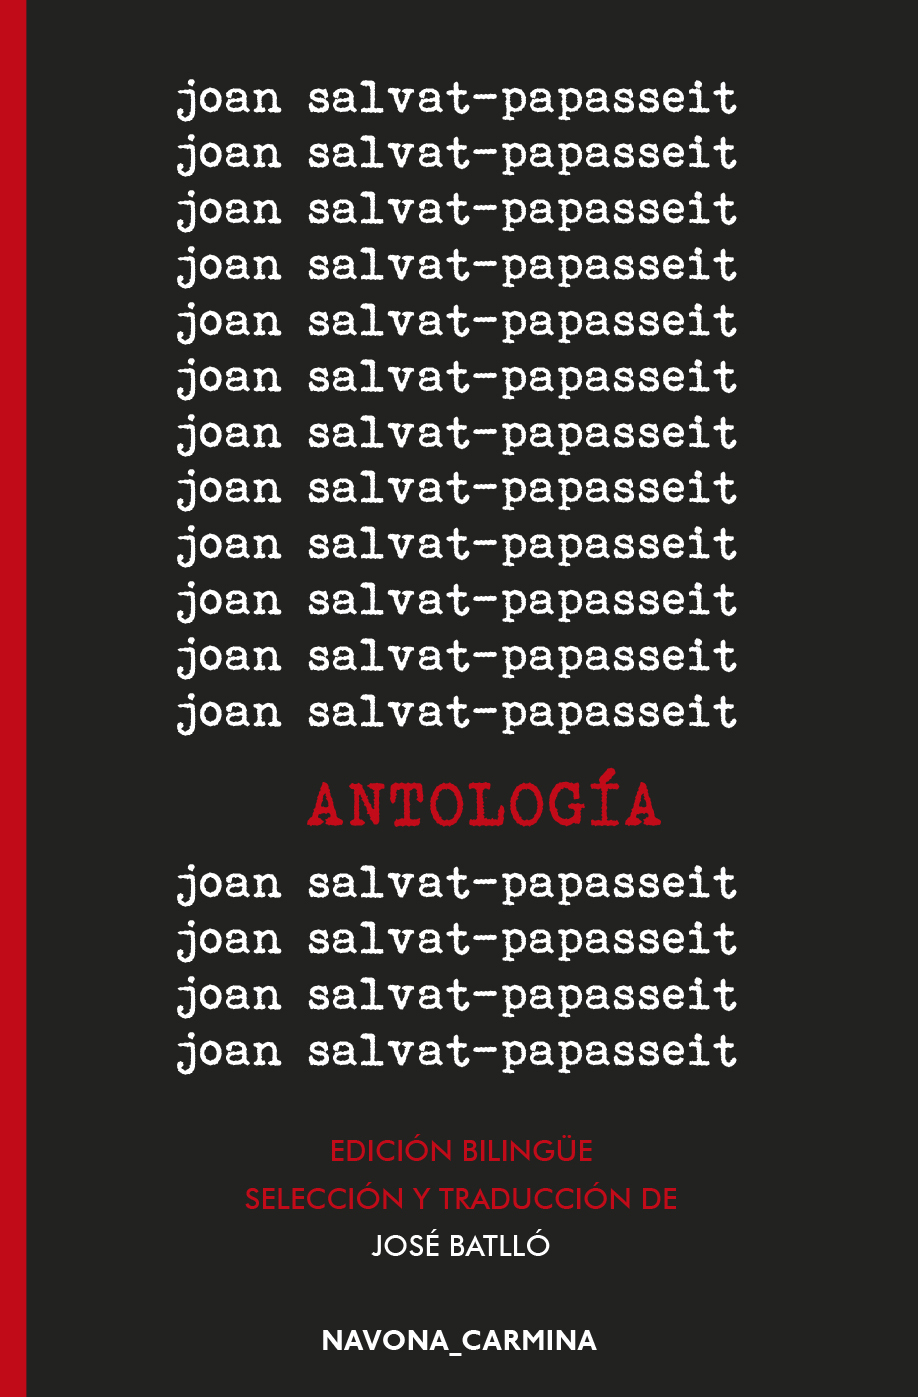 3 poemas de Joan Salvat-Papasseit